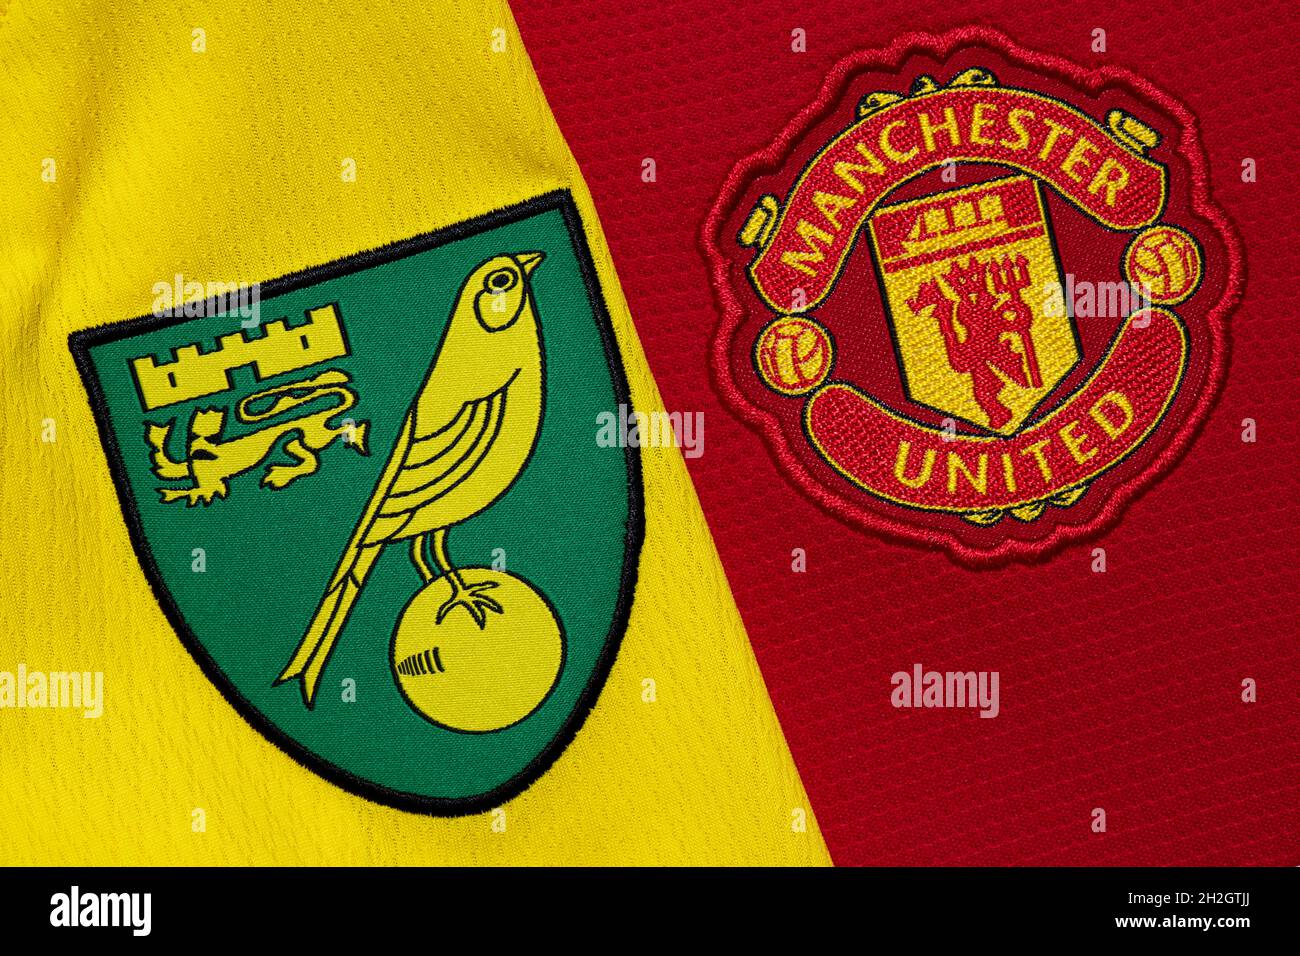 Nahaufnahme des Vereinswappens von man United und Norwich City. Stockfoto